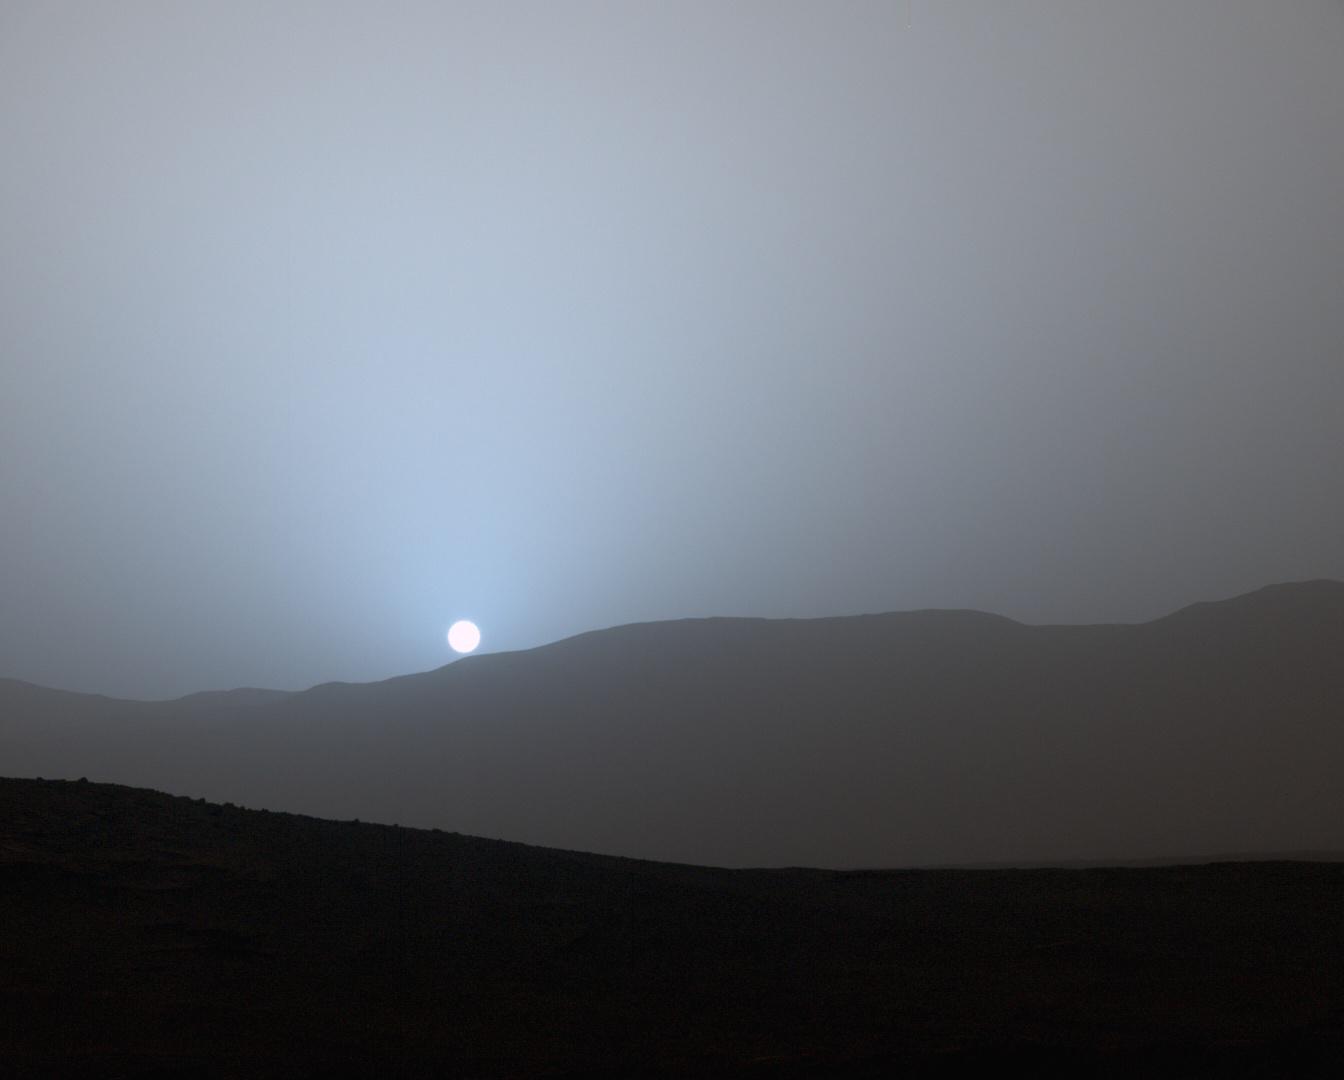 المركبة الفضائية بيرسفيرنس تلتقط صورة رائعة لغروب الشمس الأزرق على سطح المريخ